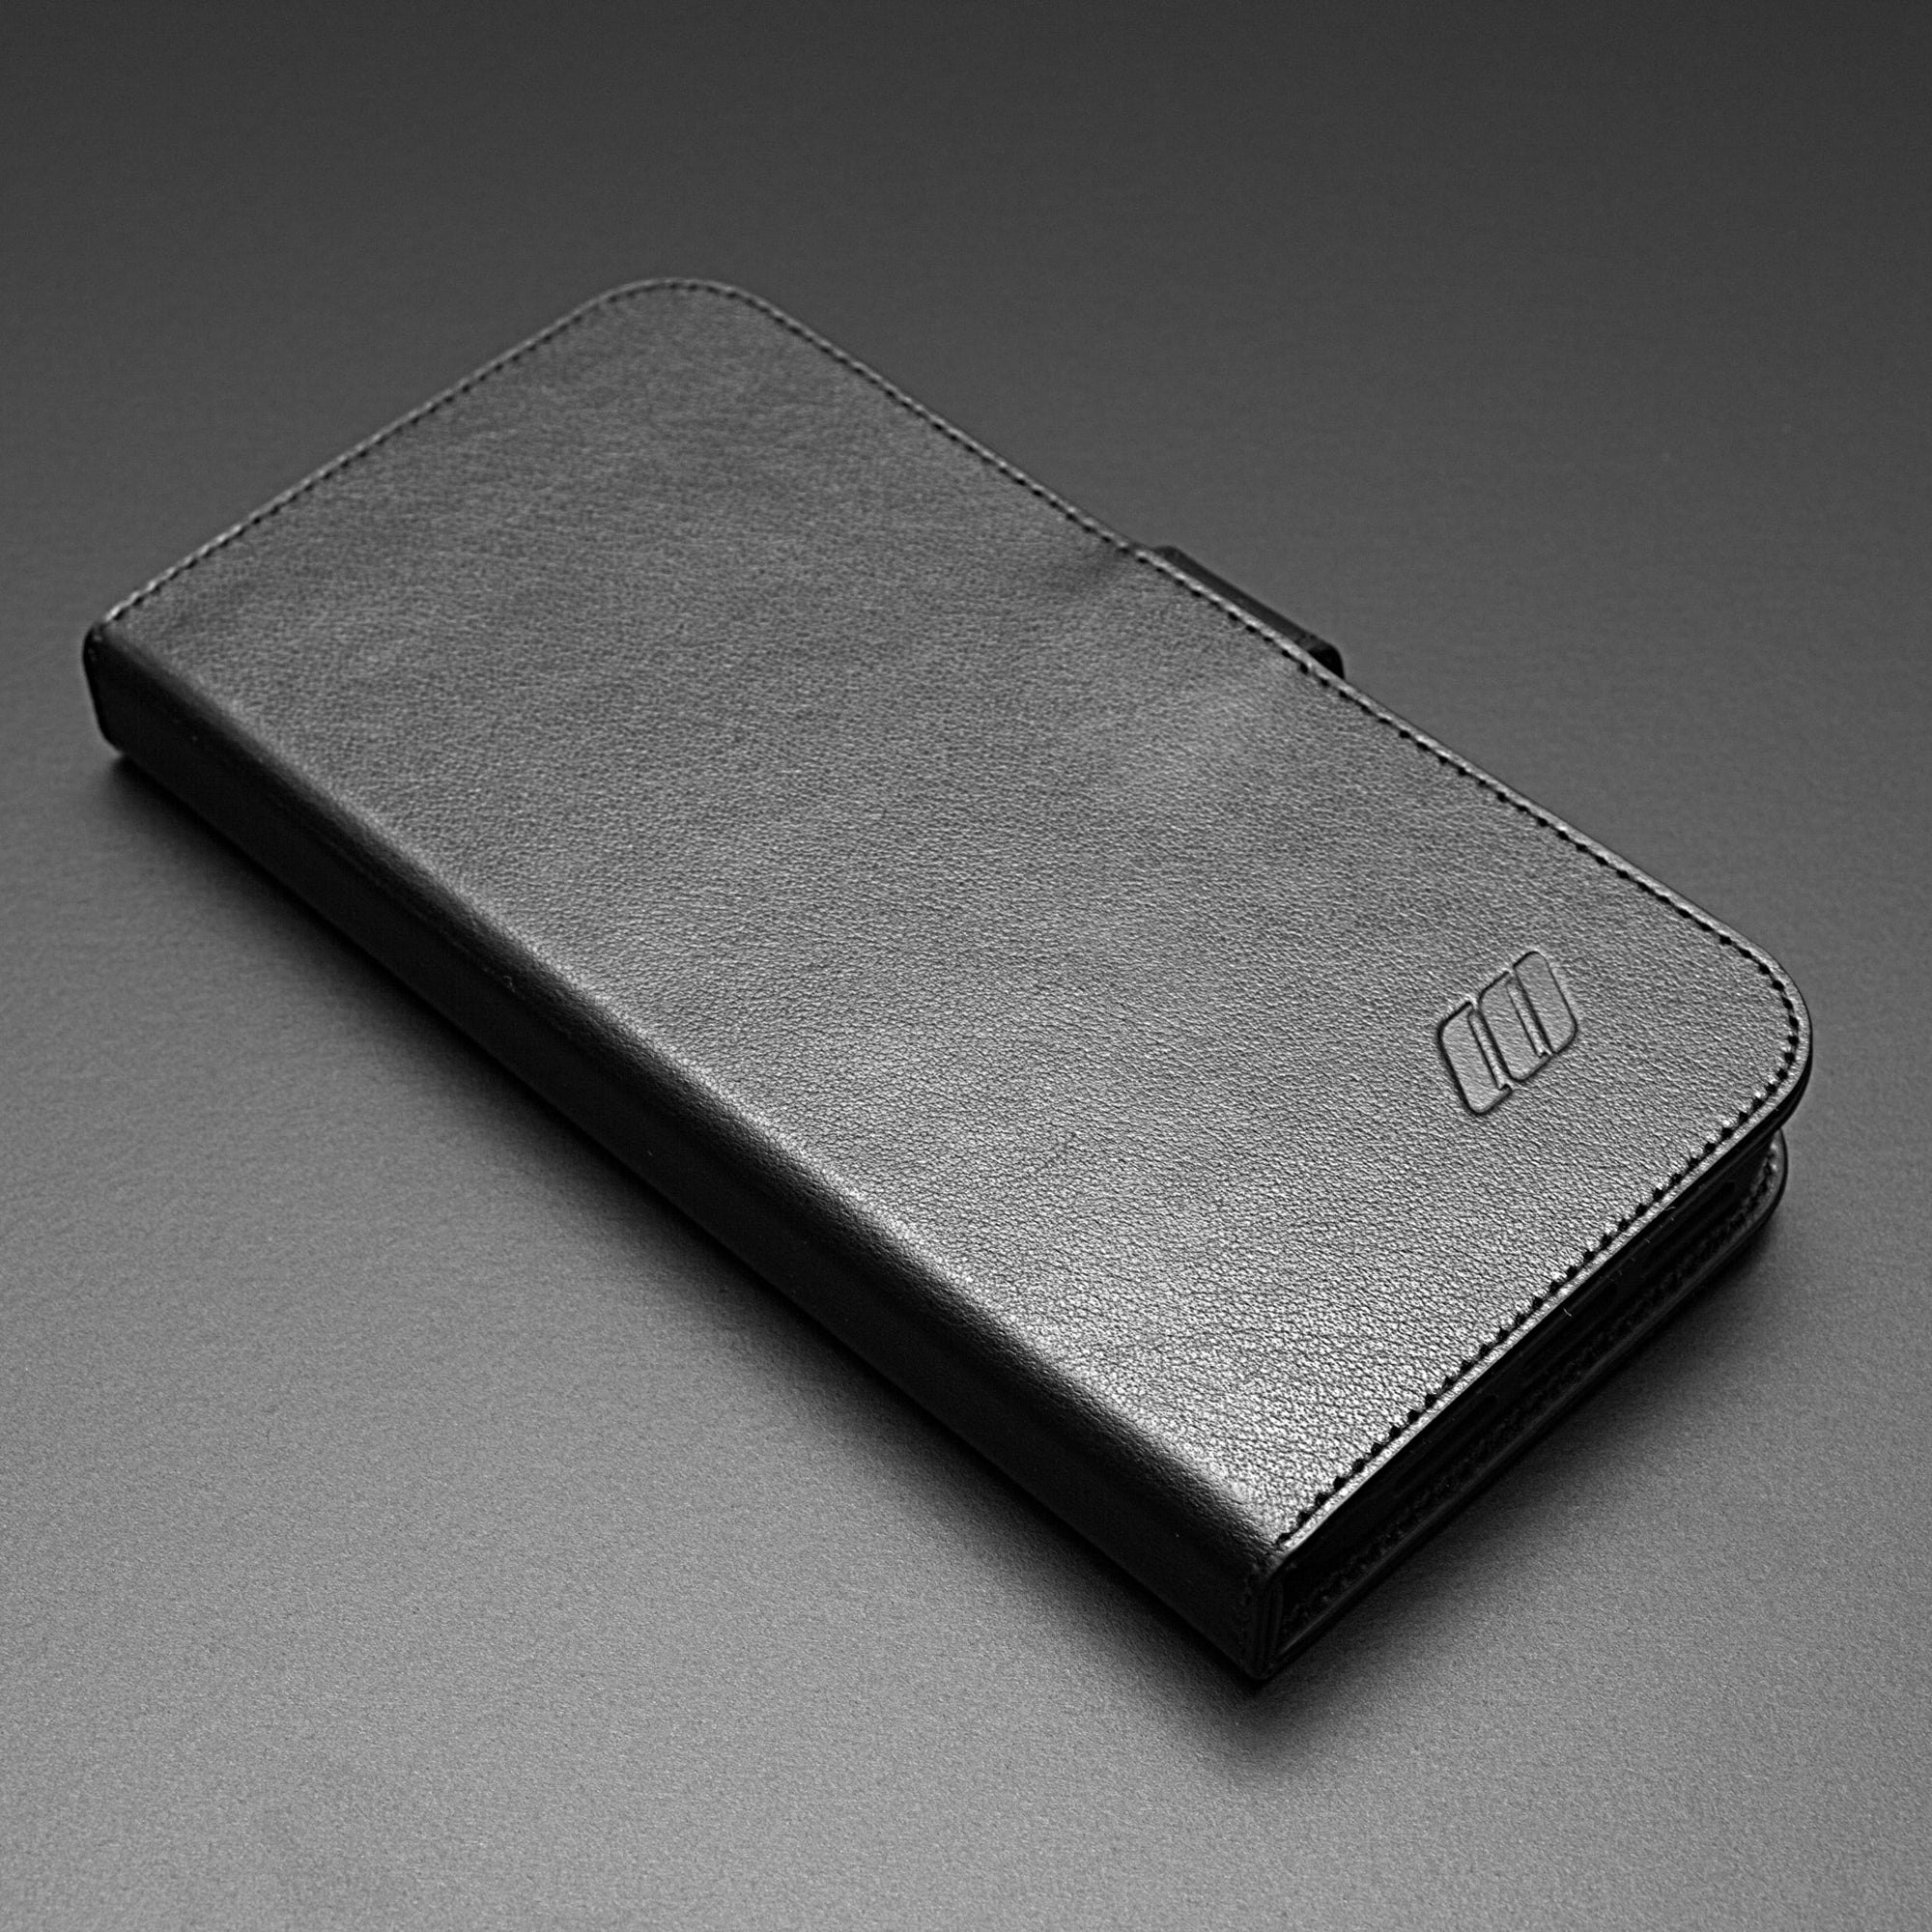 Apple iPhone 14 Pro Max Leather Folio Case - Black